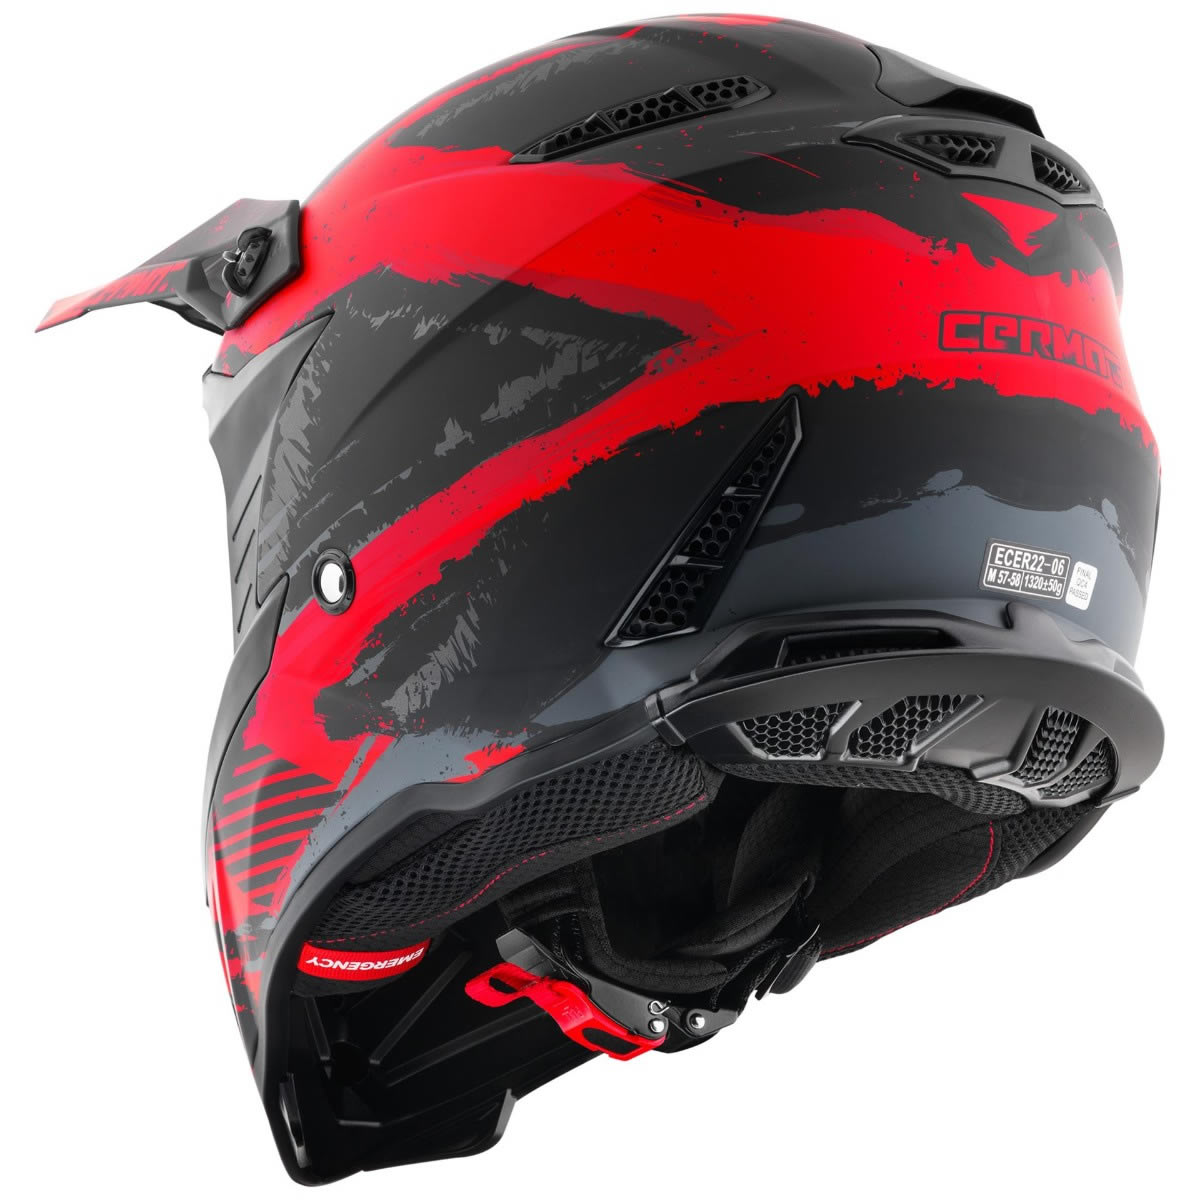 Germot GM 540 Helm, schwarz-rot matt